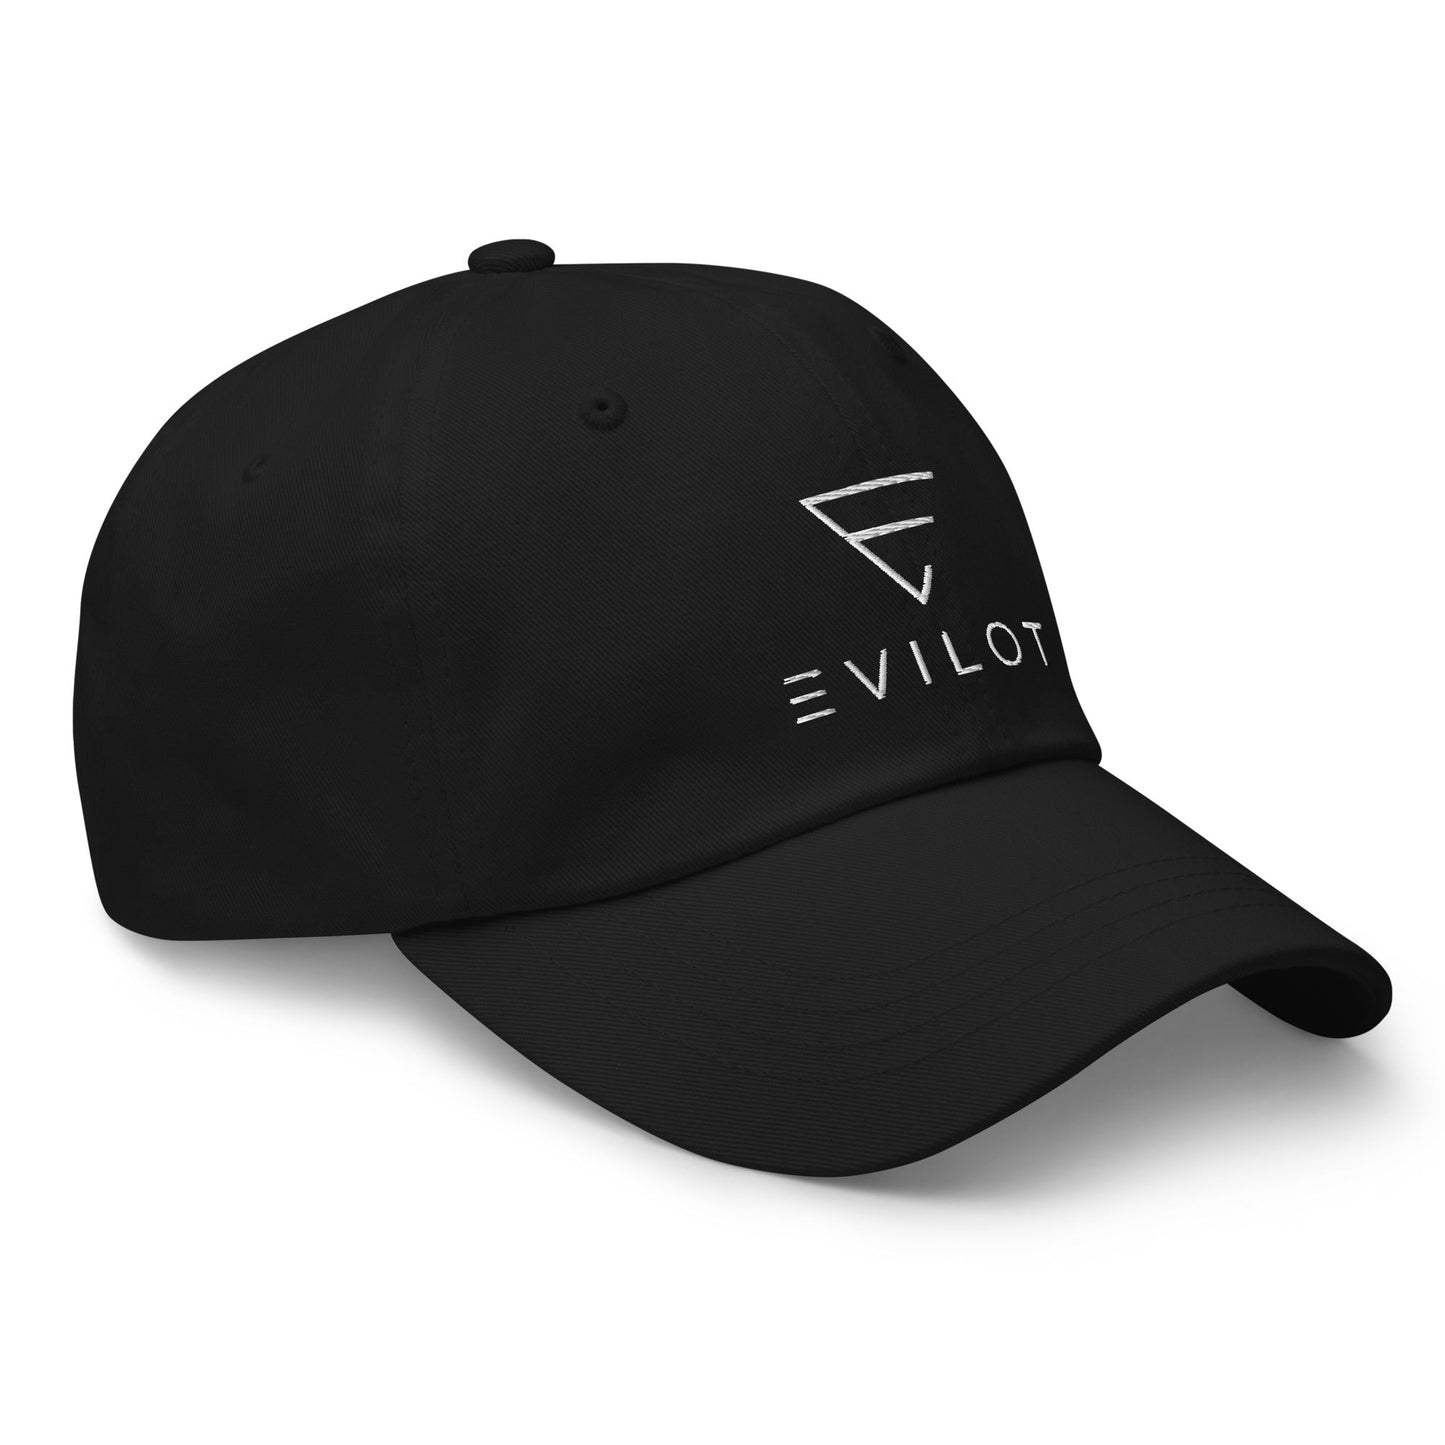 Evilot Hat - Black - Evilot Enterprises